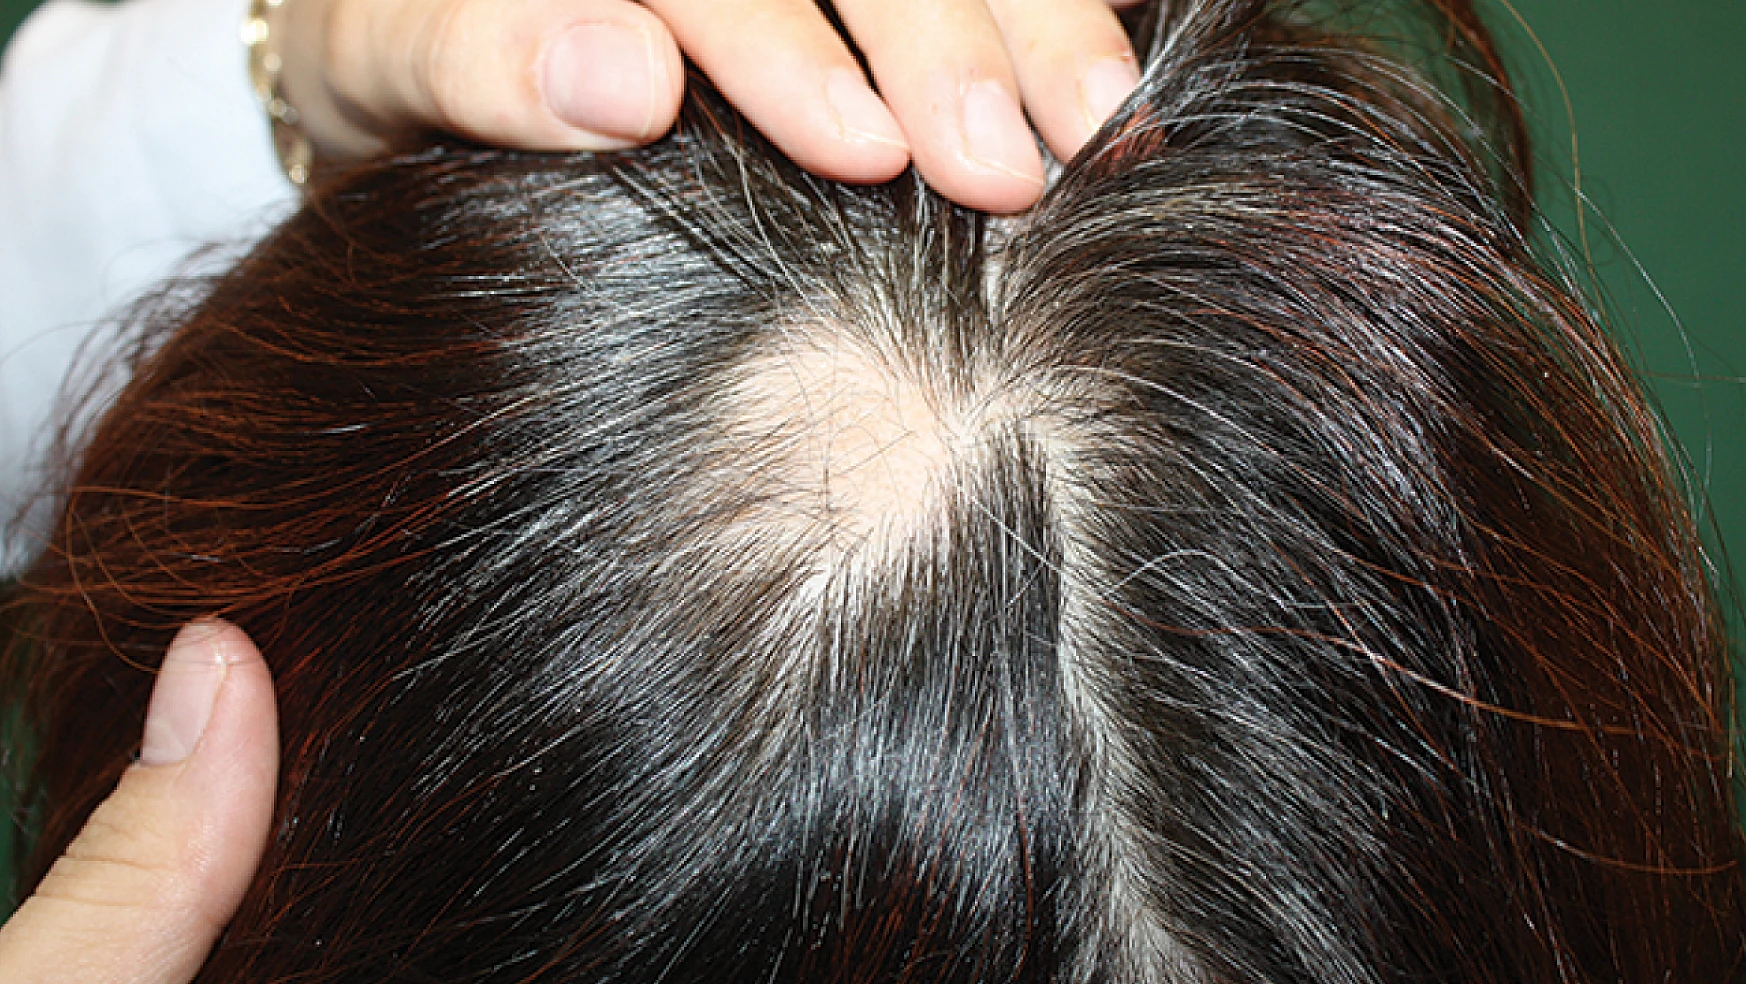 Çağımızın hastalığı saç dökülmesine karşı ne yapılmalıdır?